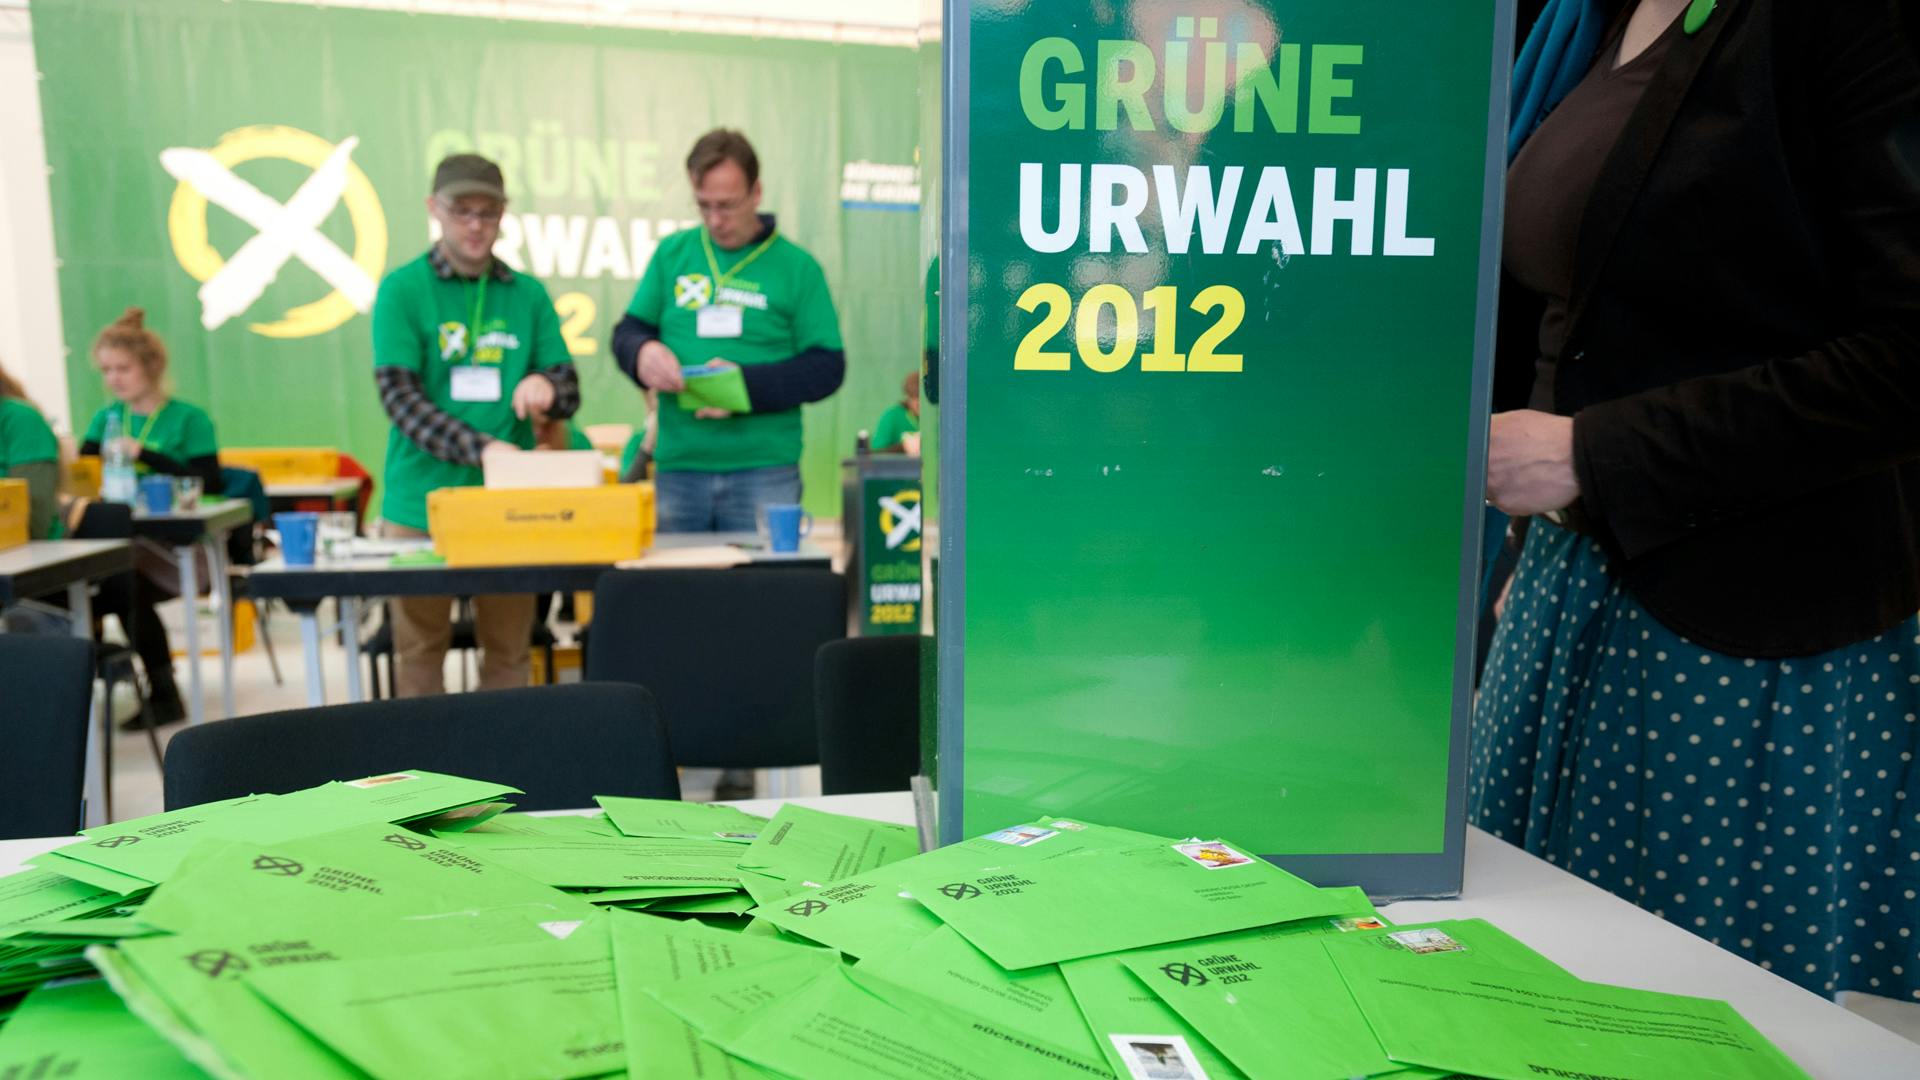 Im Vordergrund liegen viele grüne Briefumschläge auf einem Tisch. Dahinter ein Aufsteller, auf dem "Grüne Urwahl 2012" steht sowie mehrere Menschen, die Briefe aus Postkisten nehmen und öffnen.